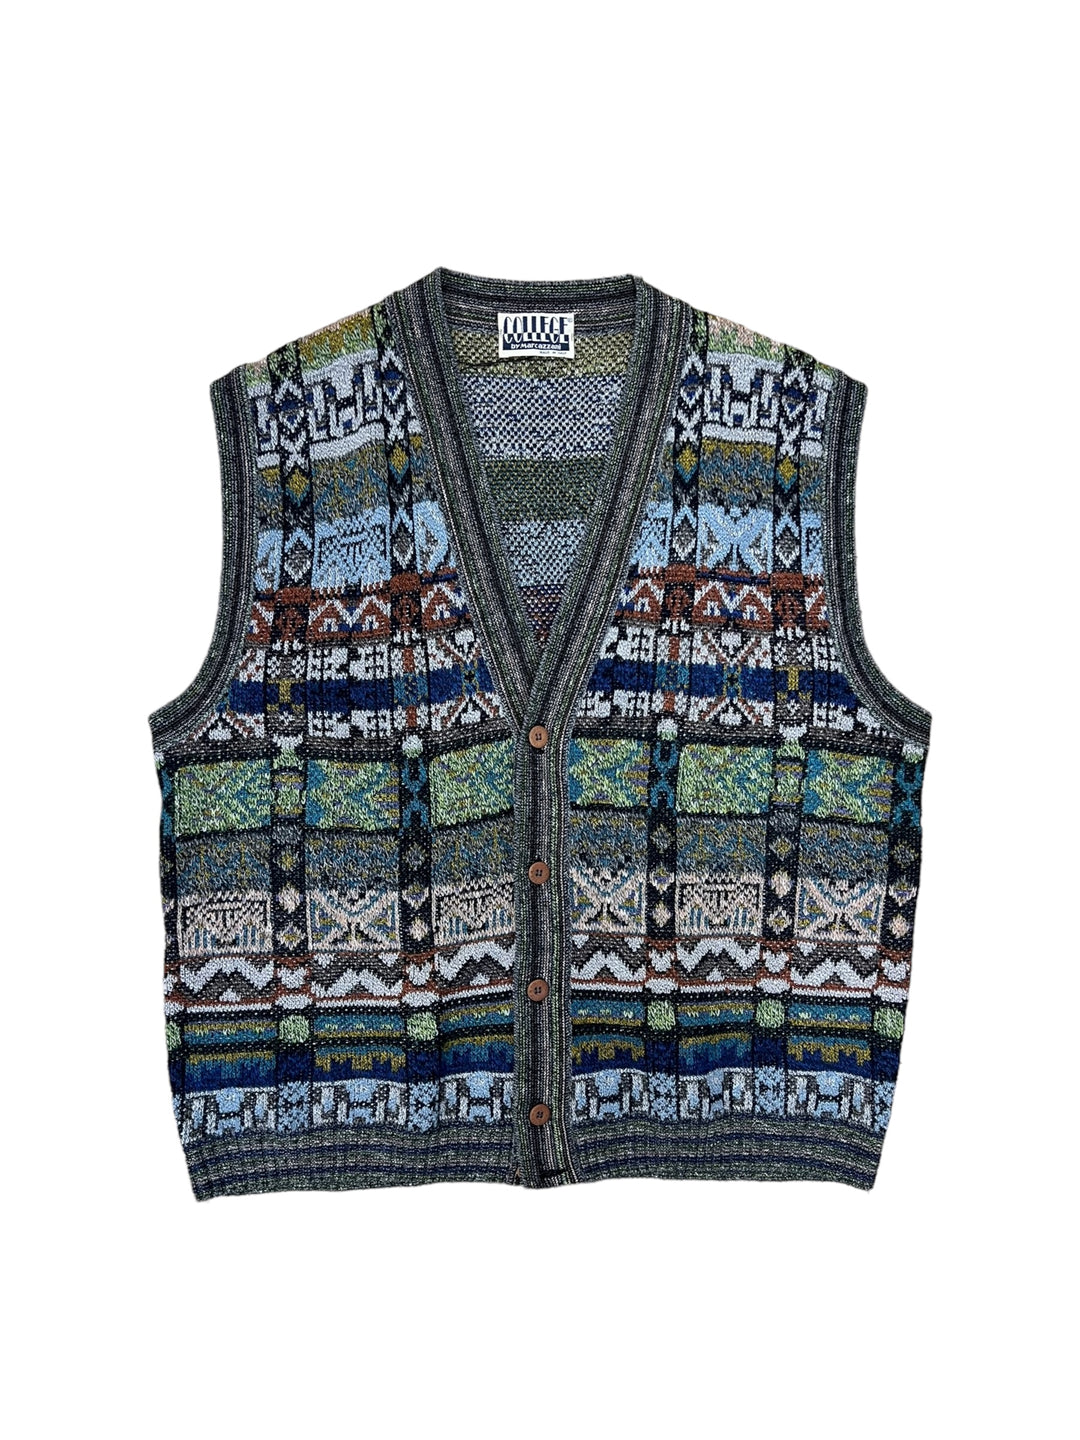 Vintage knit button vest Men’s Extra Large